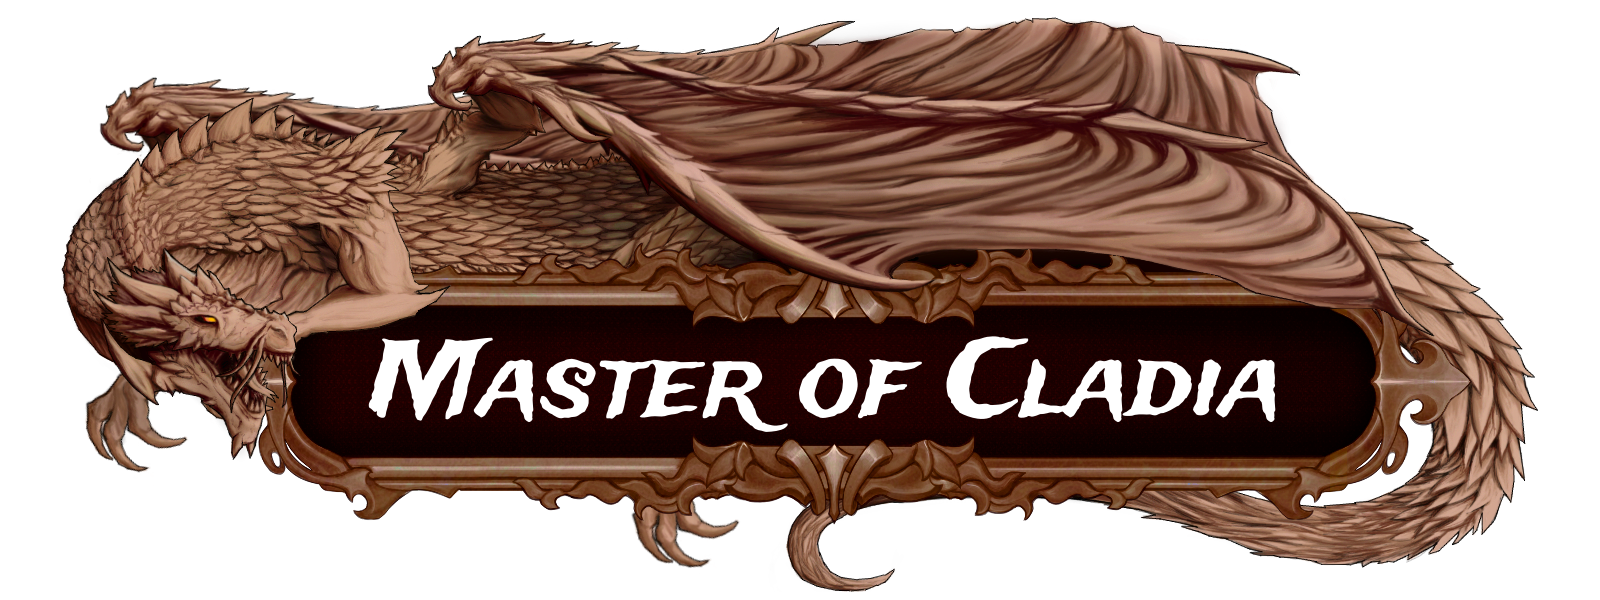 Master of Cladia